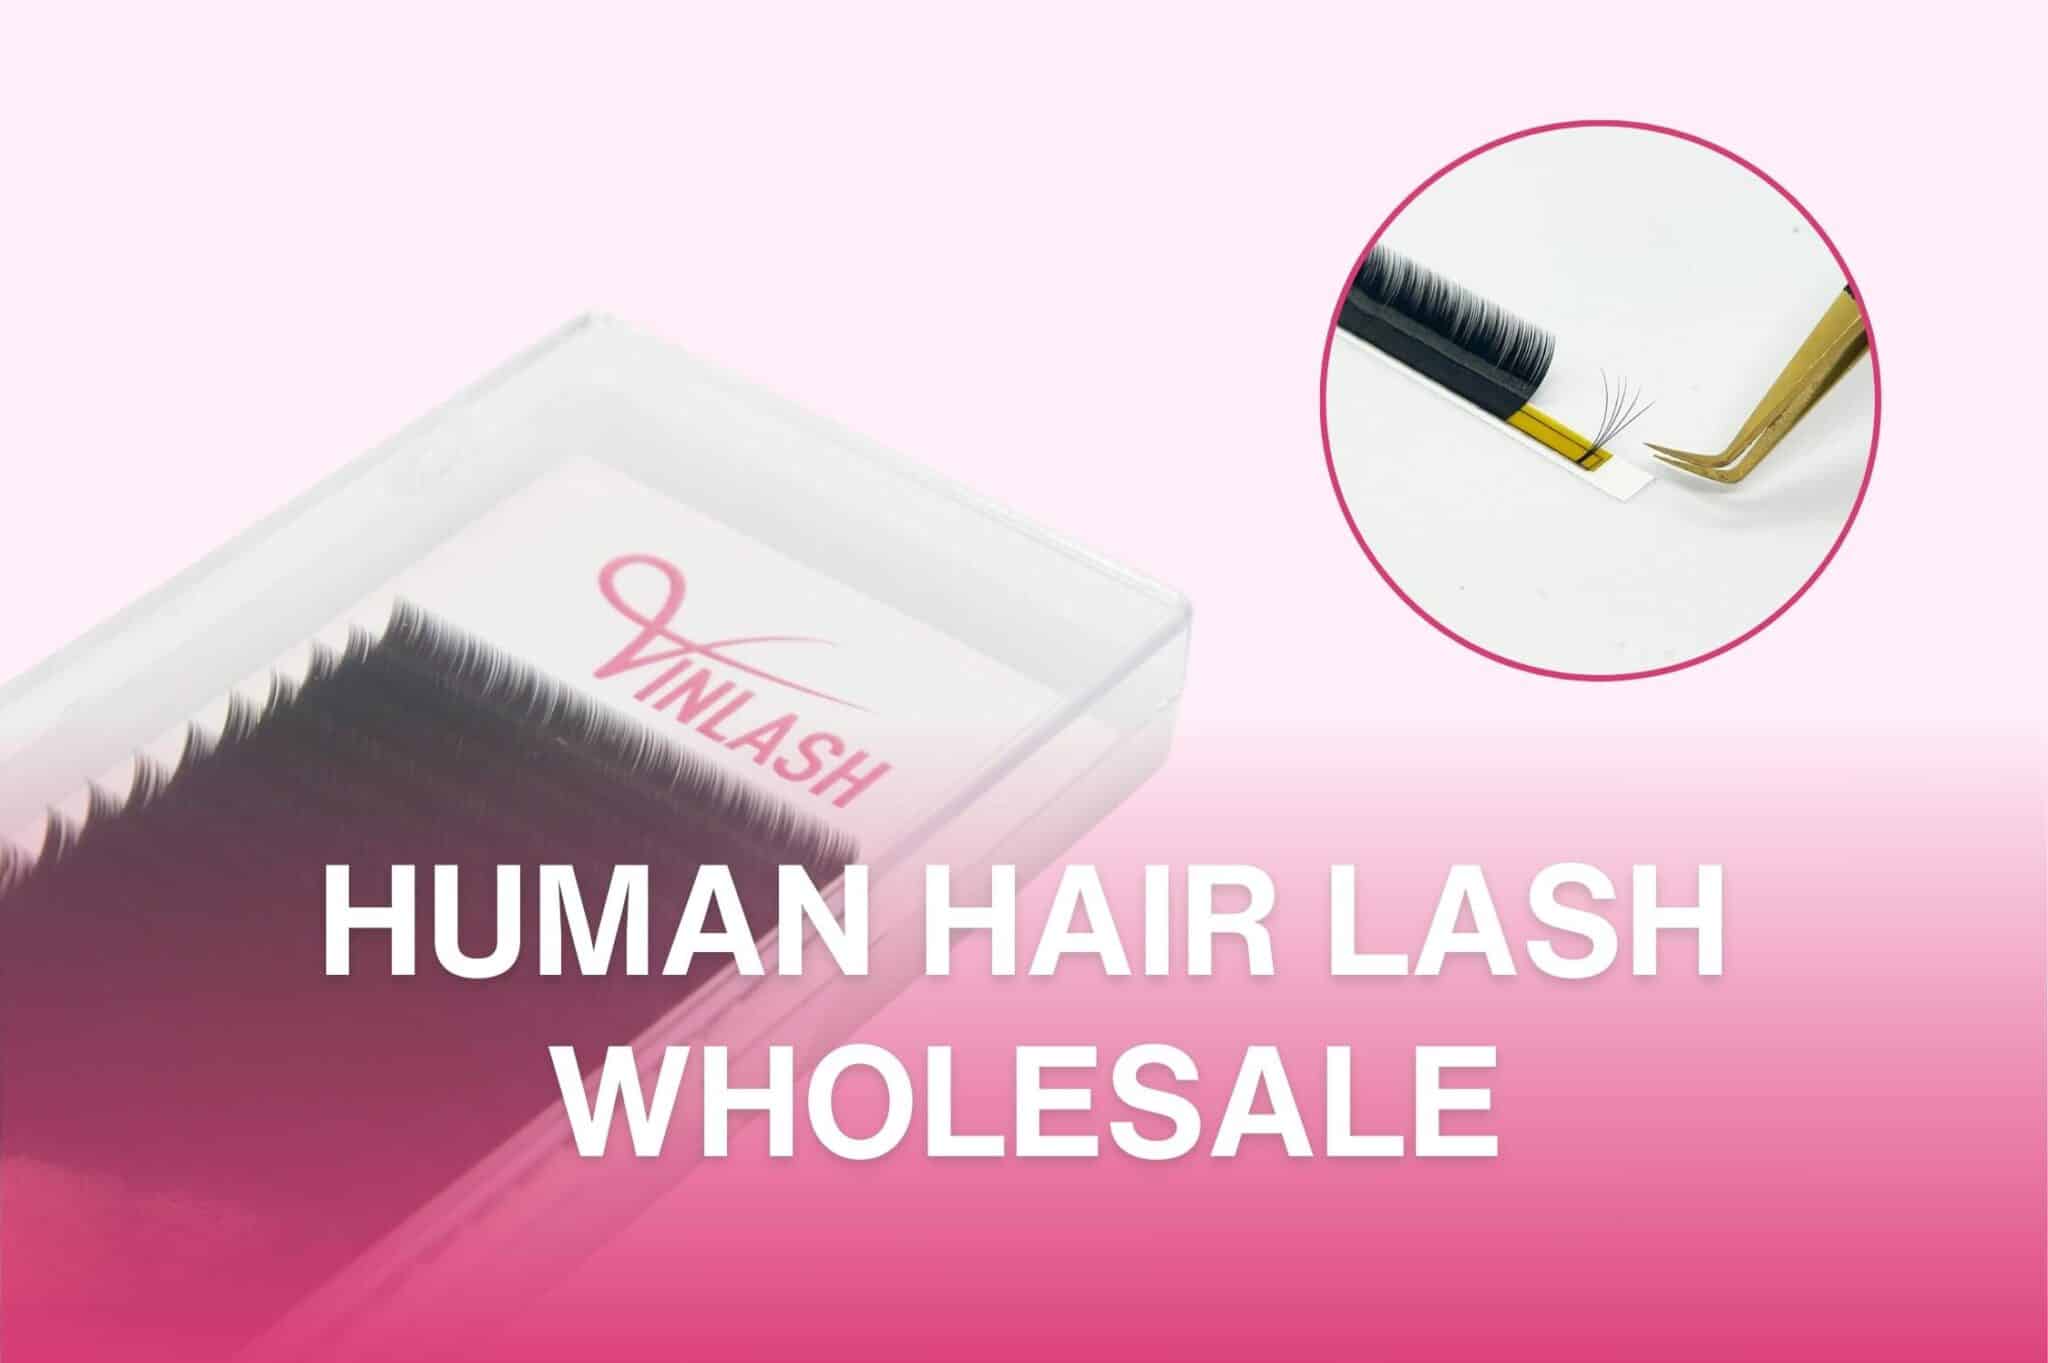 Human Hair Lash Wholesale tag